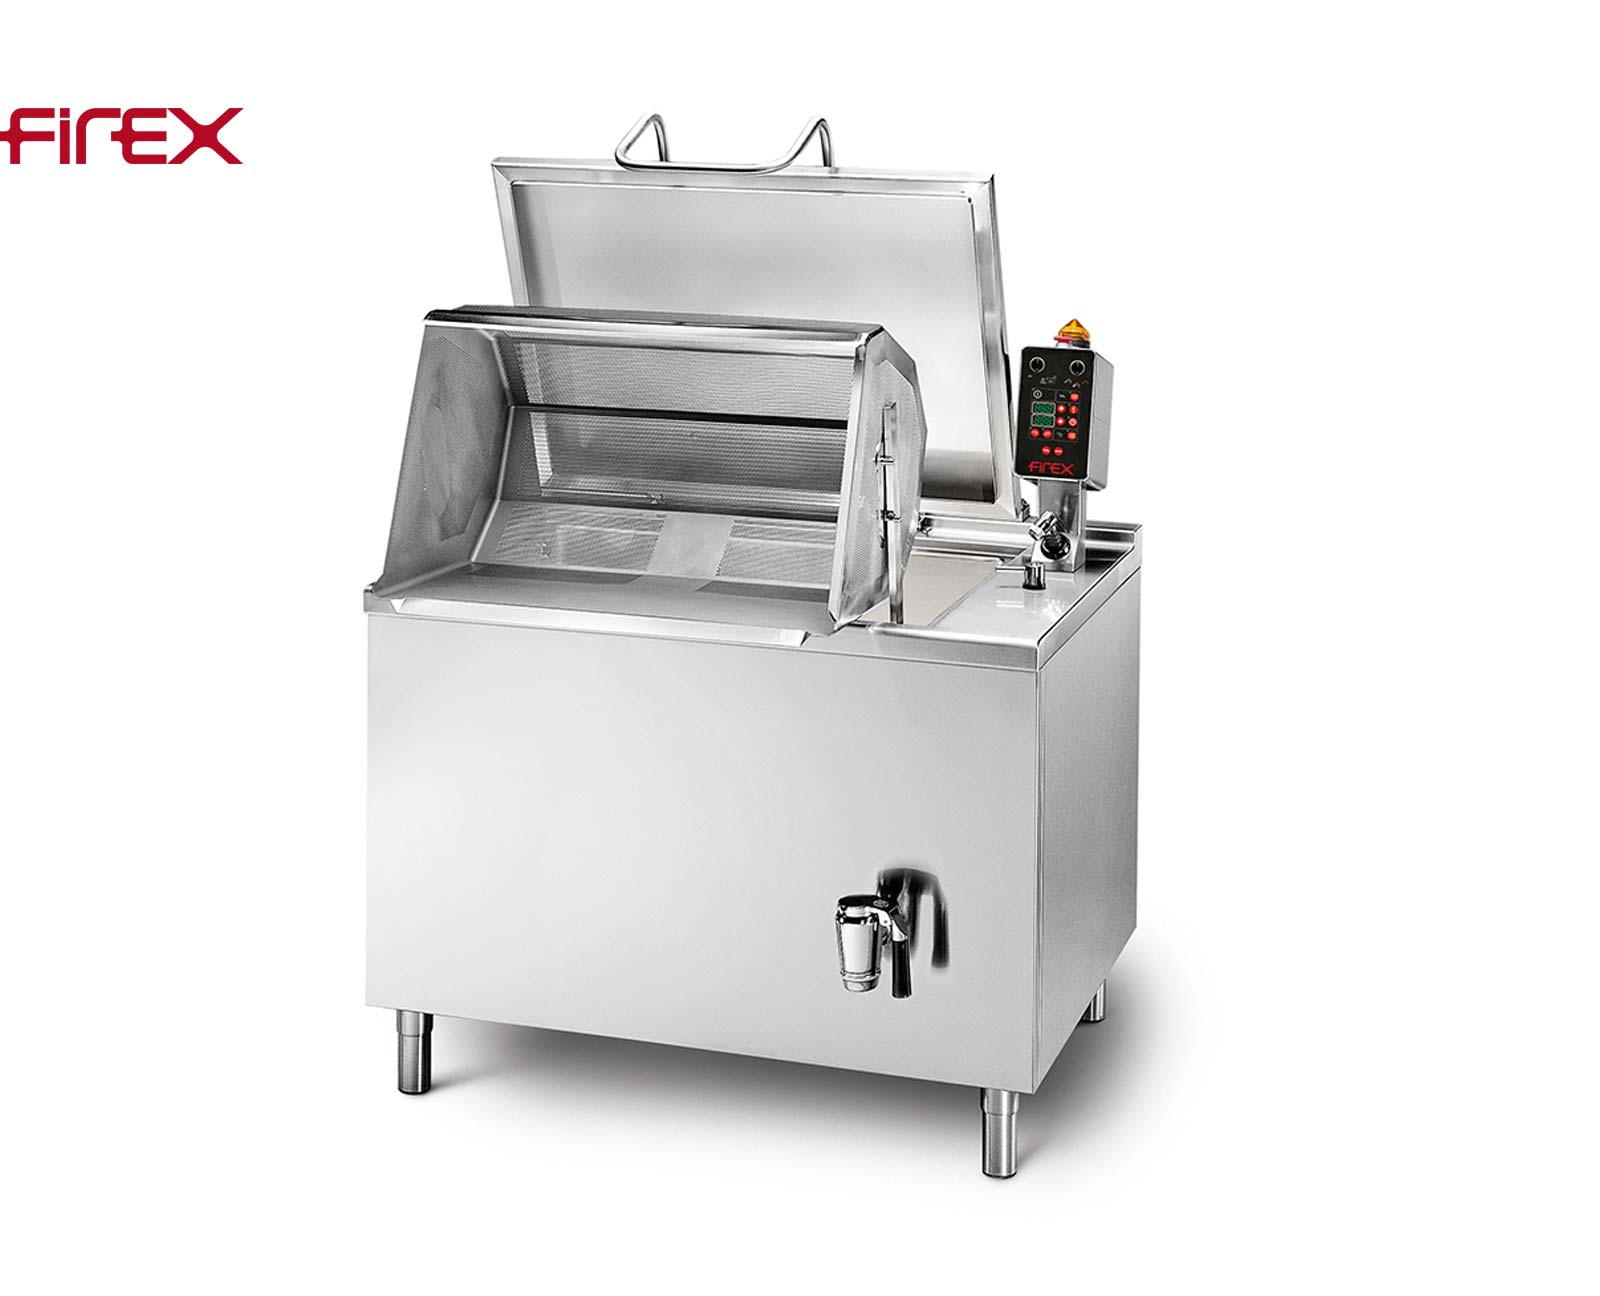 Firex Multicooker Nudelkocher Pastakocher